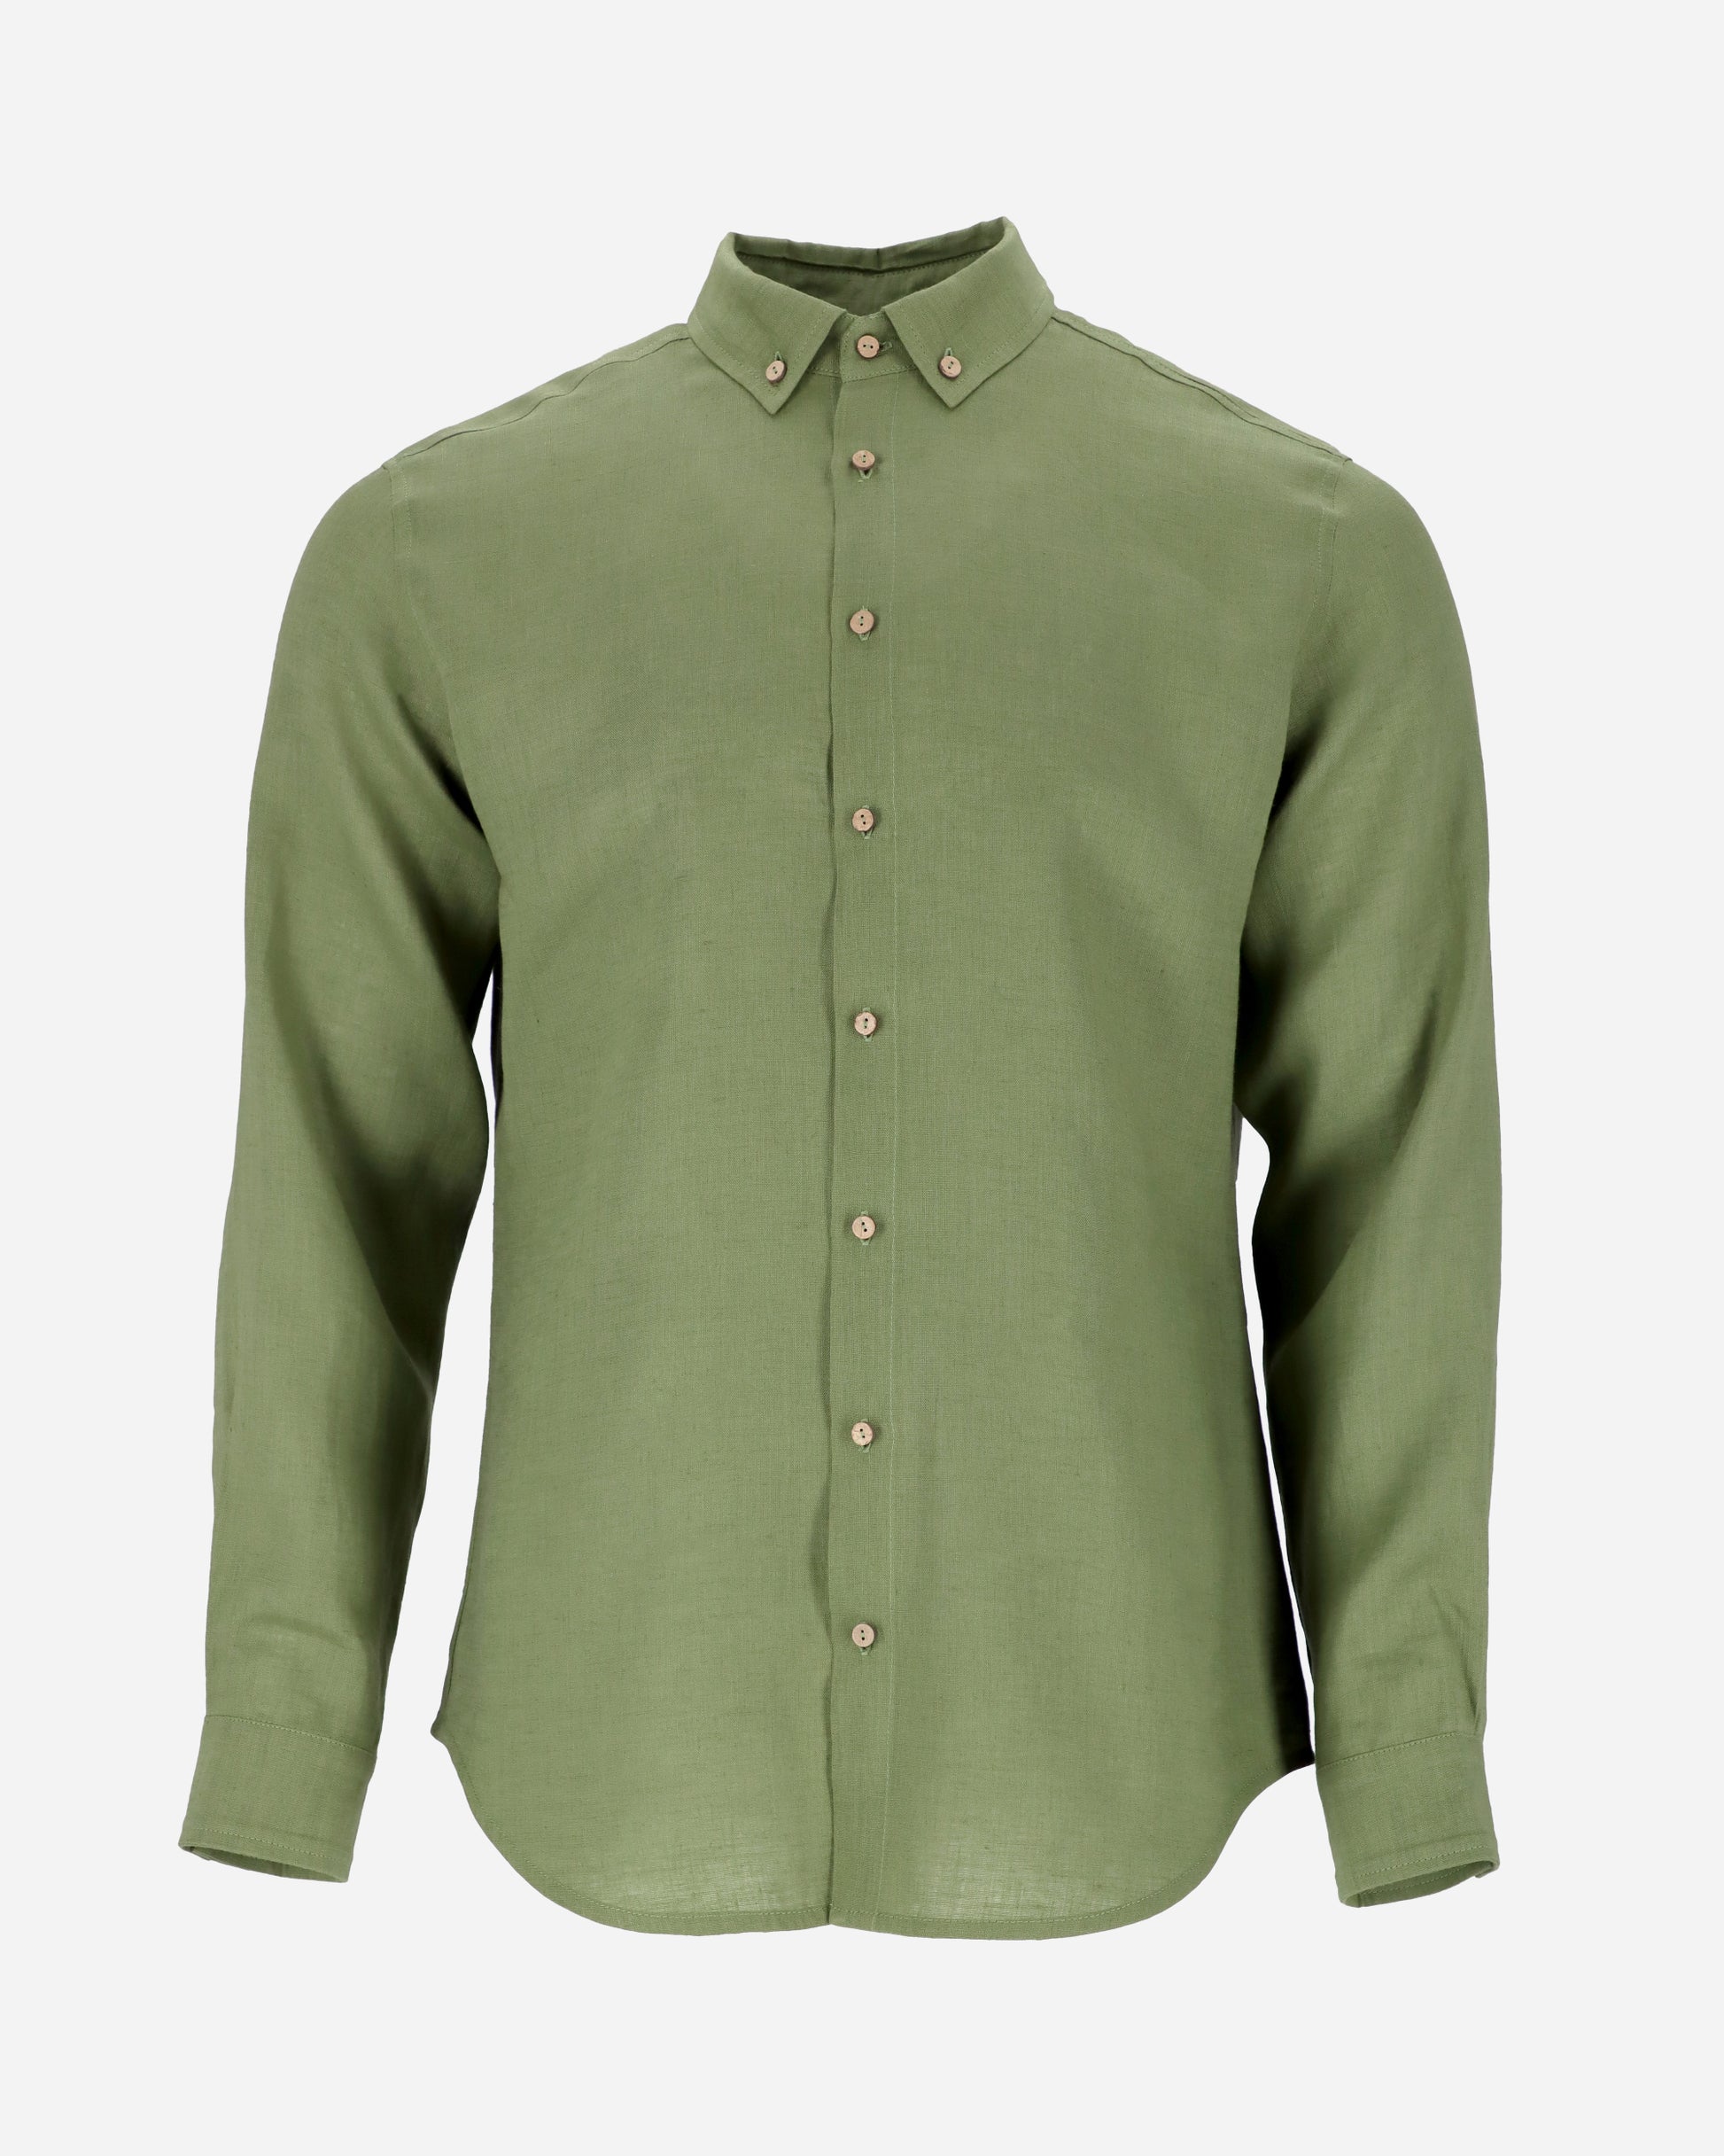 Men's linen shirt NEVADA in Forest green - MagicLinen